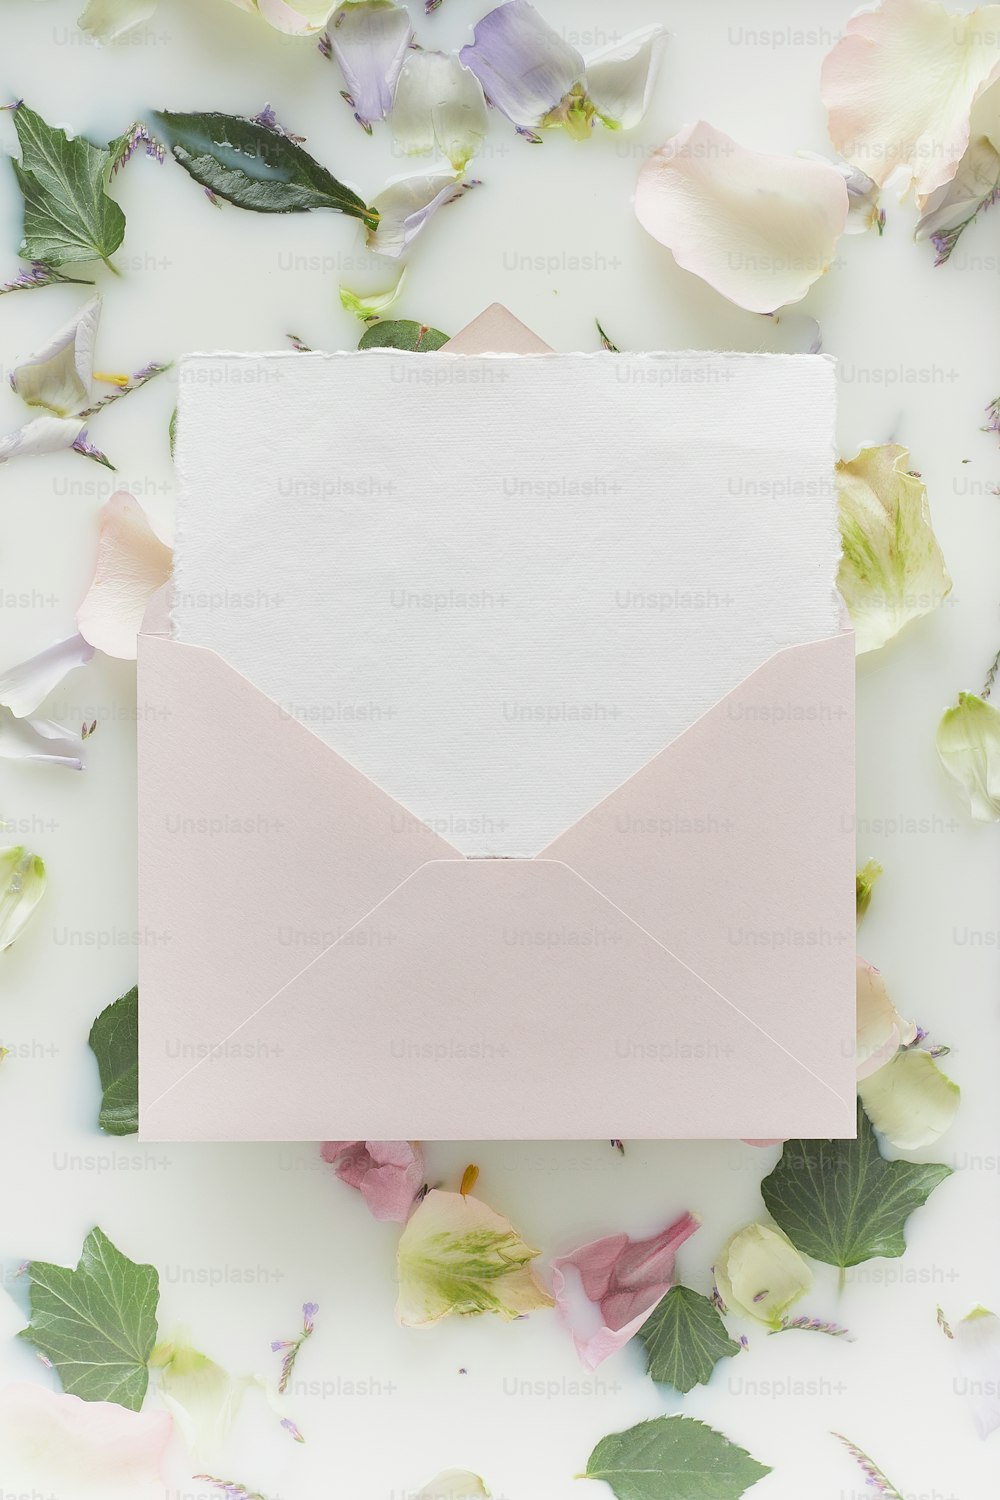 Un sobre blanco con un papel rosa en su interior rodeado de flores